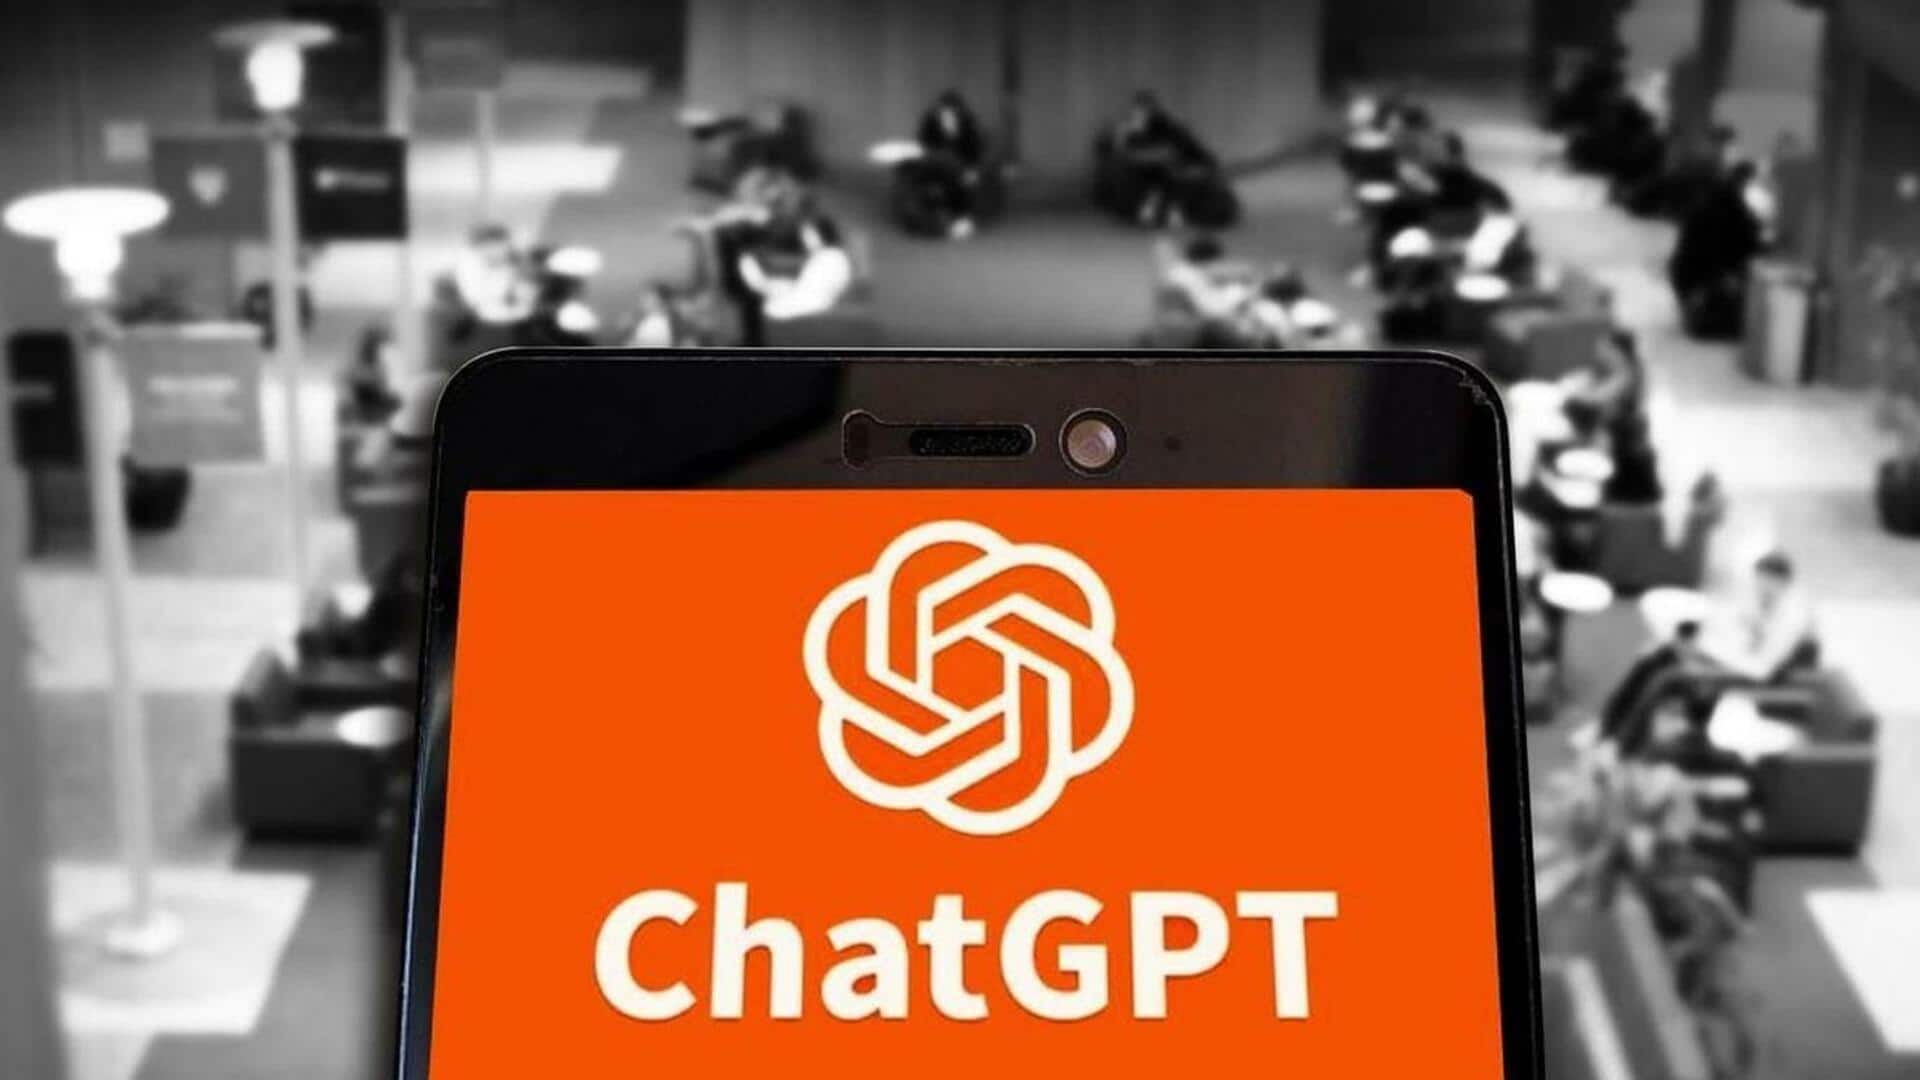 ChatGPT के इस्तेमाल पर इस विश्वविद्यालय ने लगाया प्रतिबंध, नियम तोड़ने वालों को मिलेगी सजा